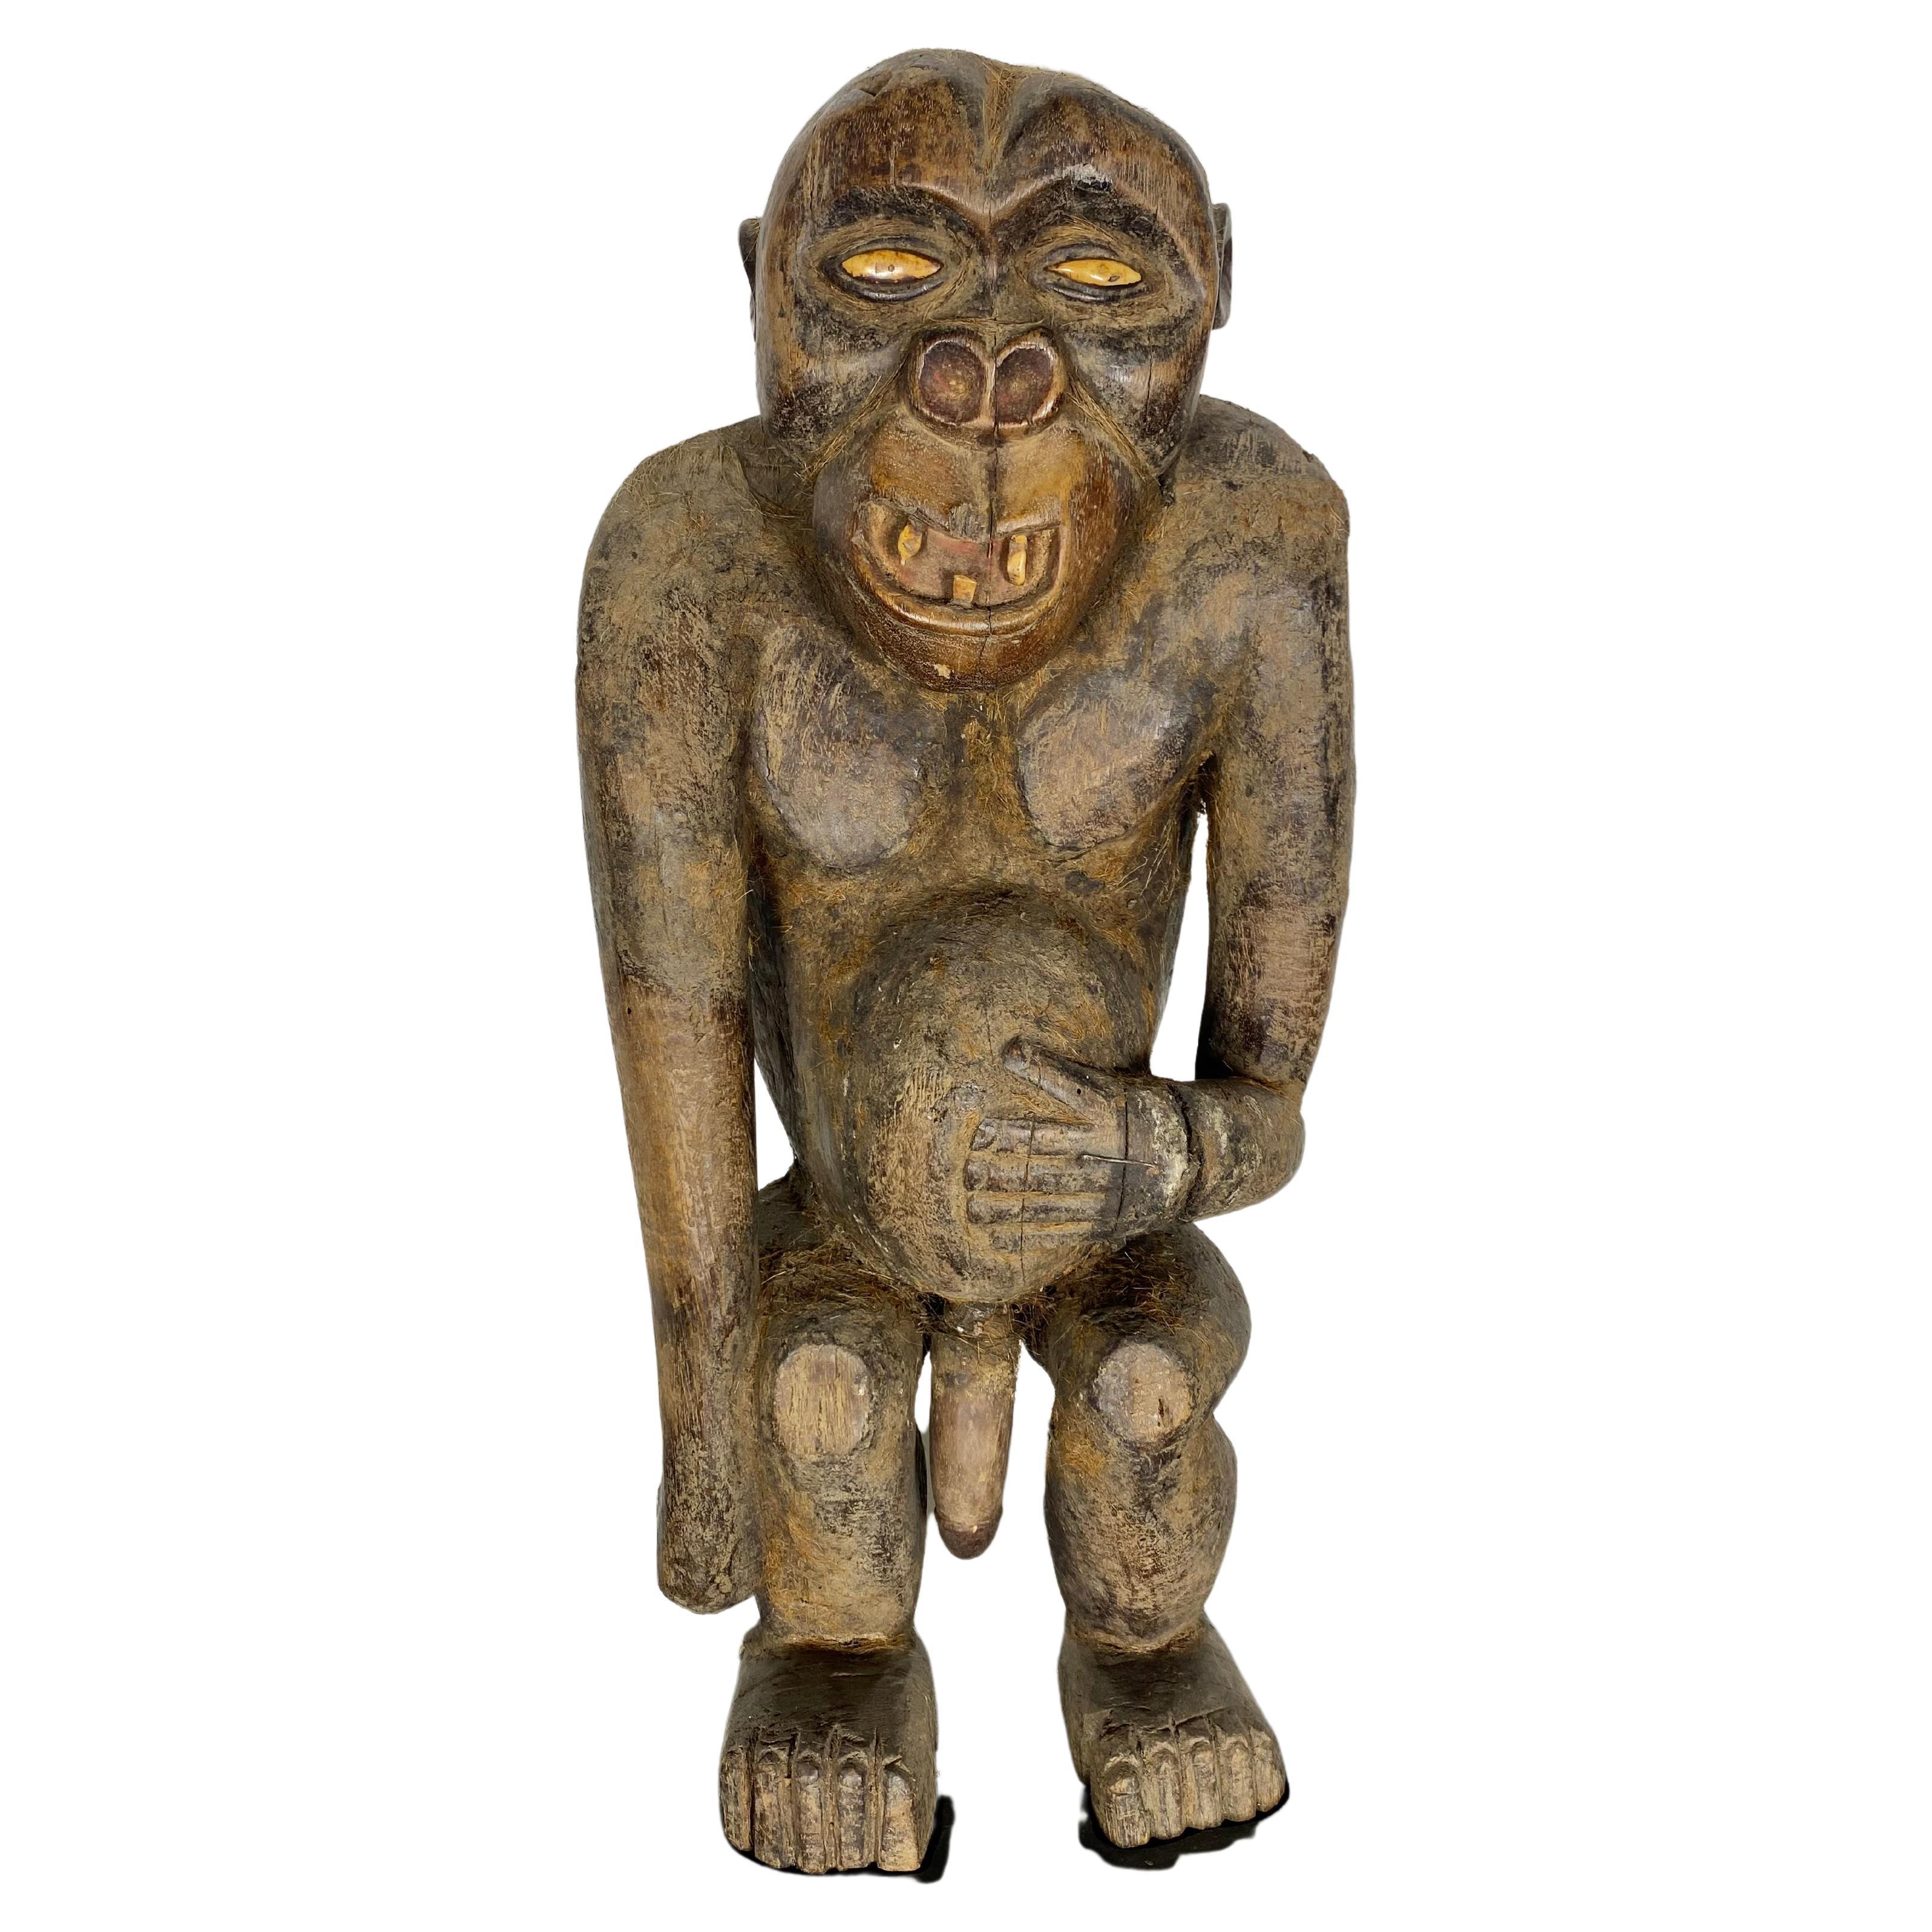 Insolite Primate/Bordon africain de fertilité sculpté à la main, Gorilla